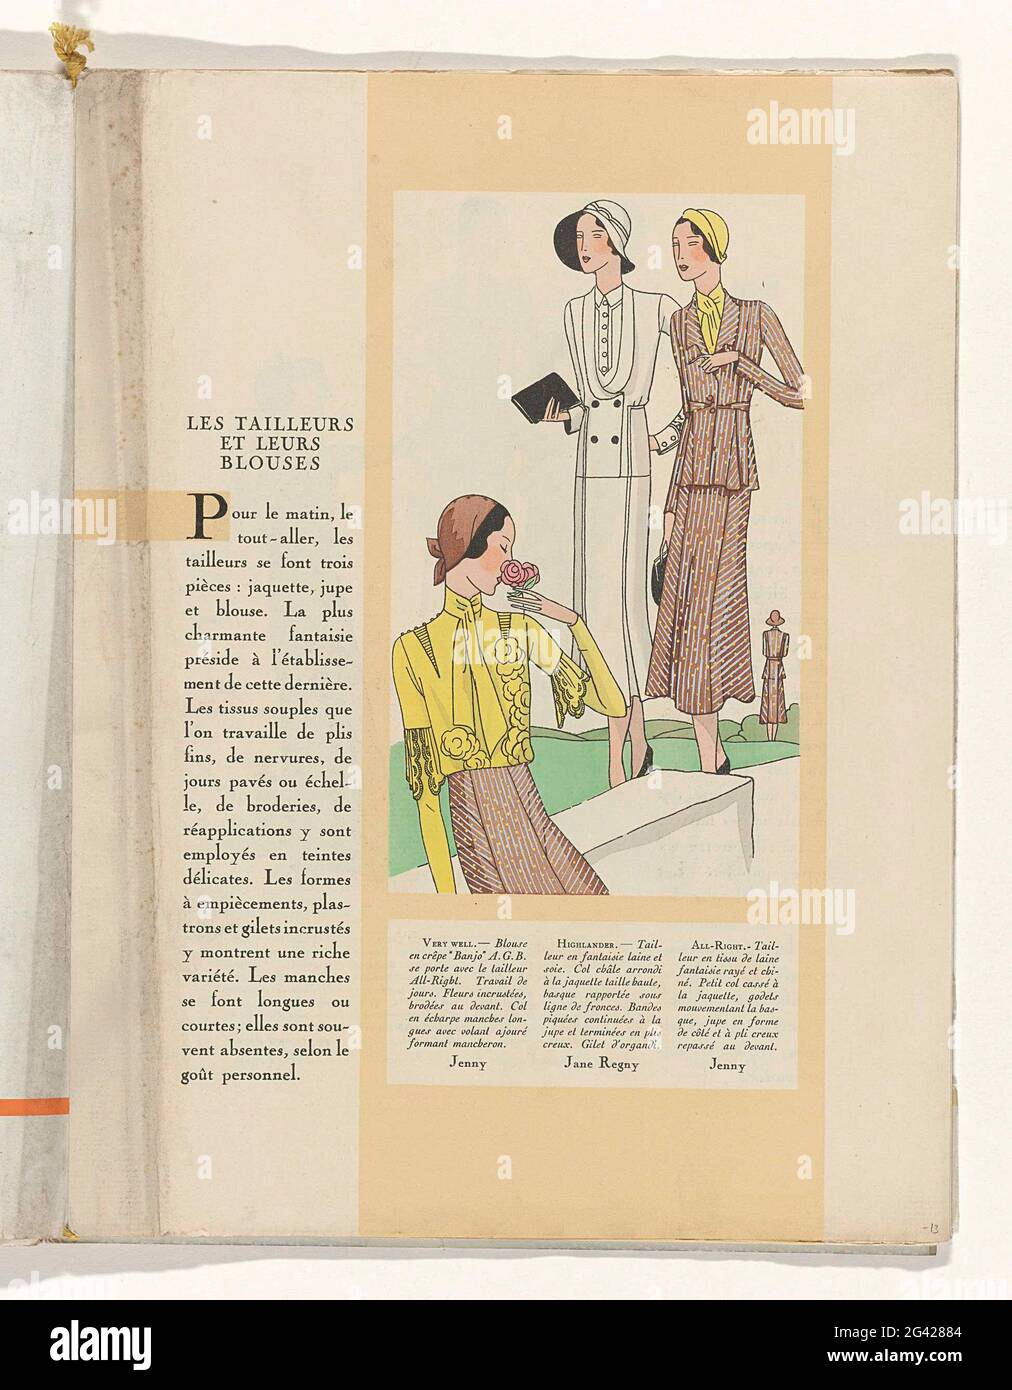 Art - Goût - Beauté, Feuillets de l 'élégance Féminine, MAI 1931, no. 129,  11th Année, p. 13. Text 'lesson tailleurs et leurs blouses' left: blouse of  crepe "banjo" a.g.b., from Jenny.